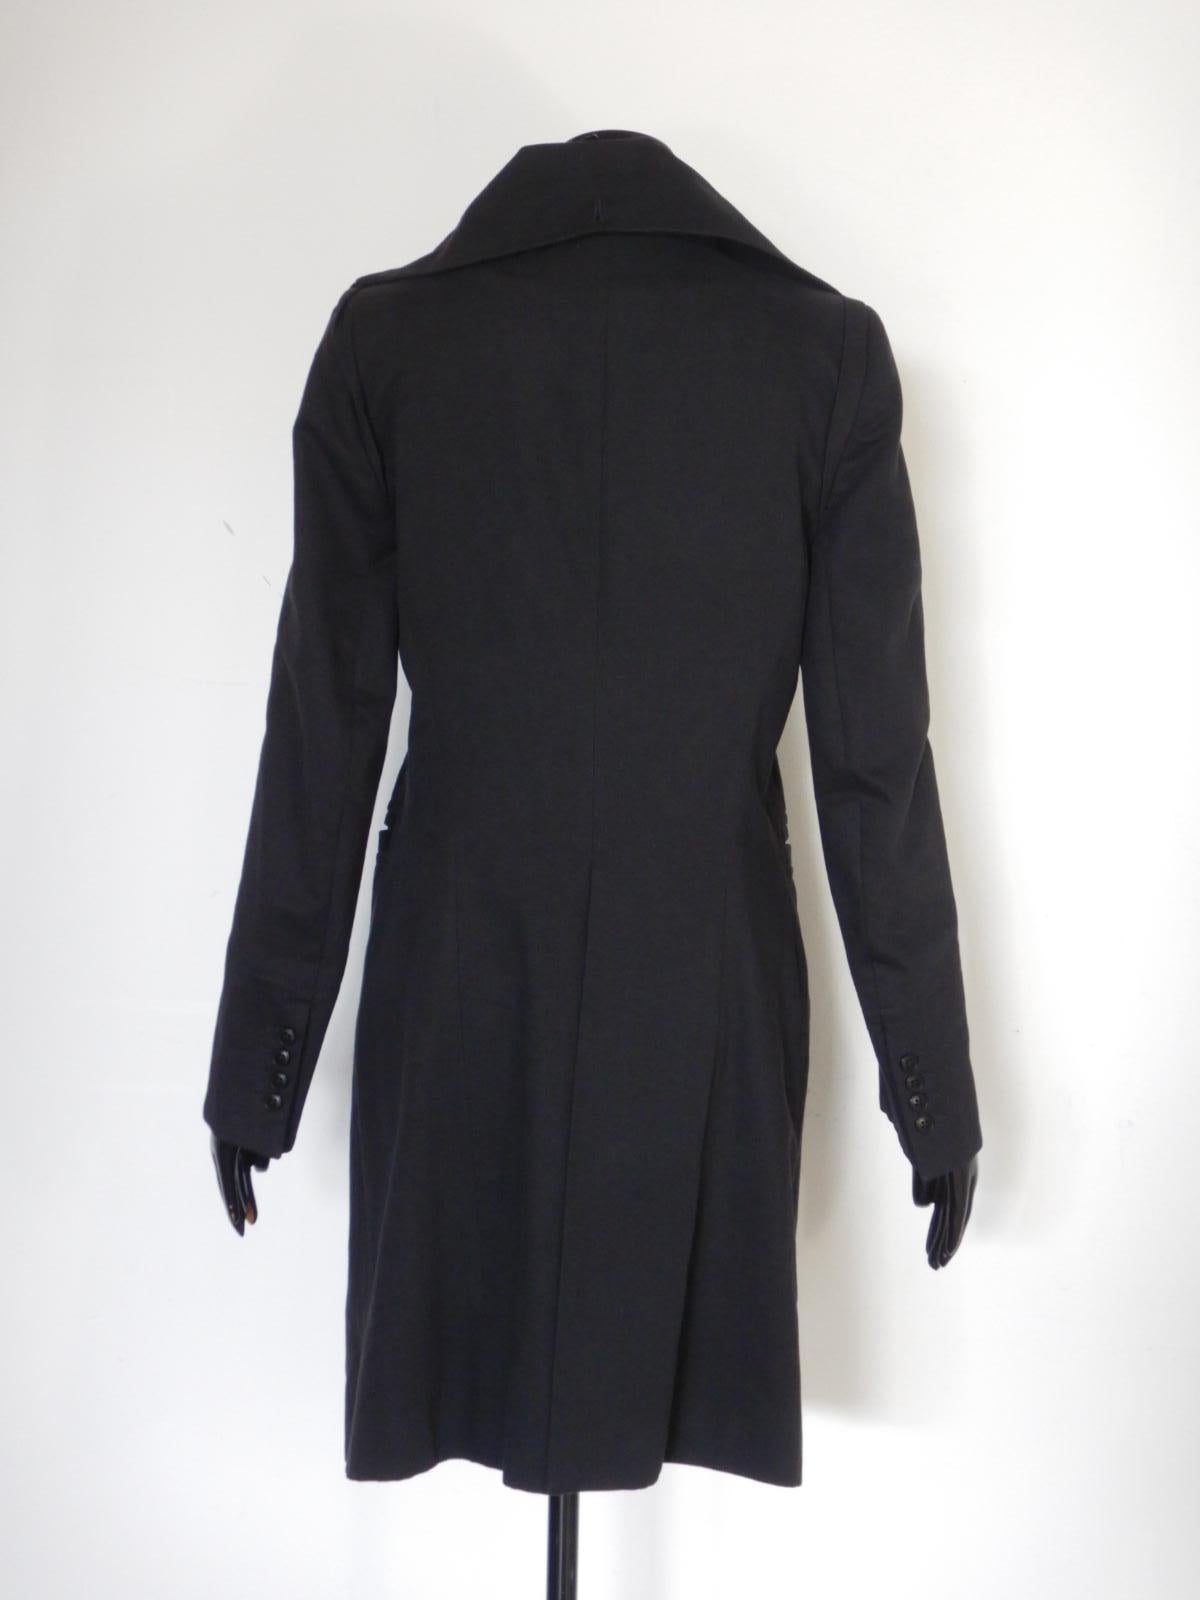 Ann Demeulemeester Black Tailored Coat 2